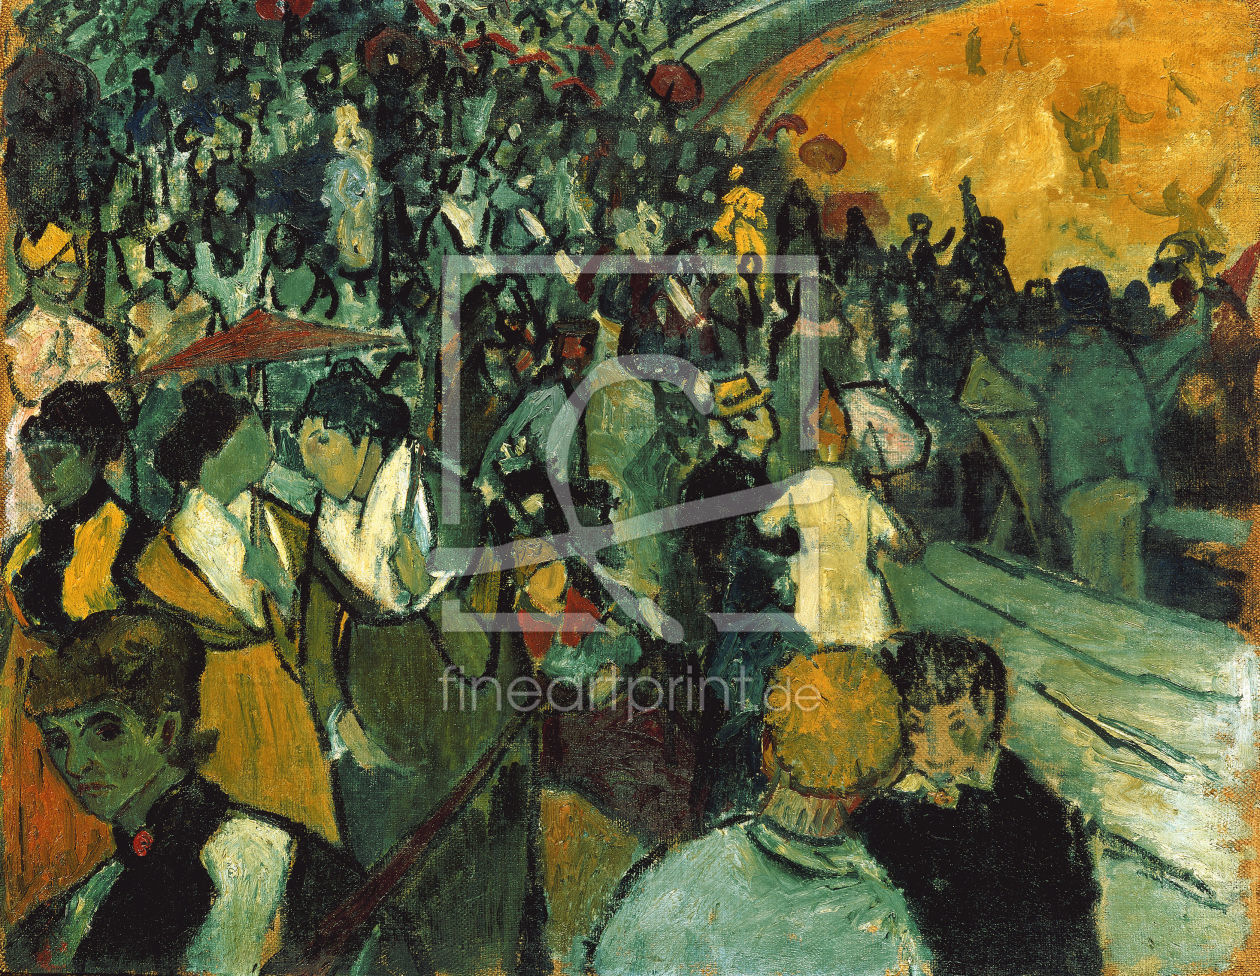 Bild-Nr.: 30003440 V.van Gogh, Arena in Arles /Paint./1888 erstellt von van Gogh, Vincent